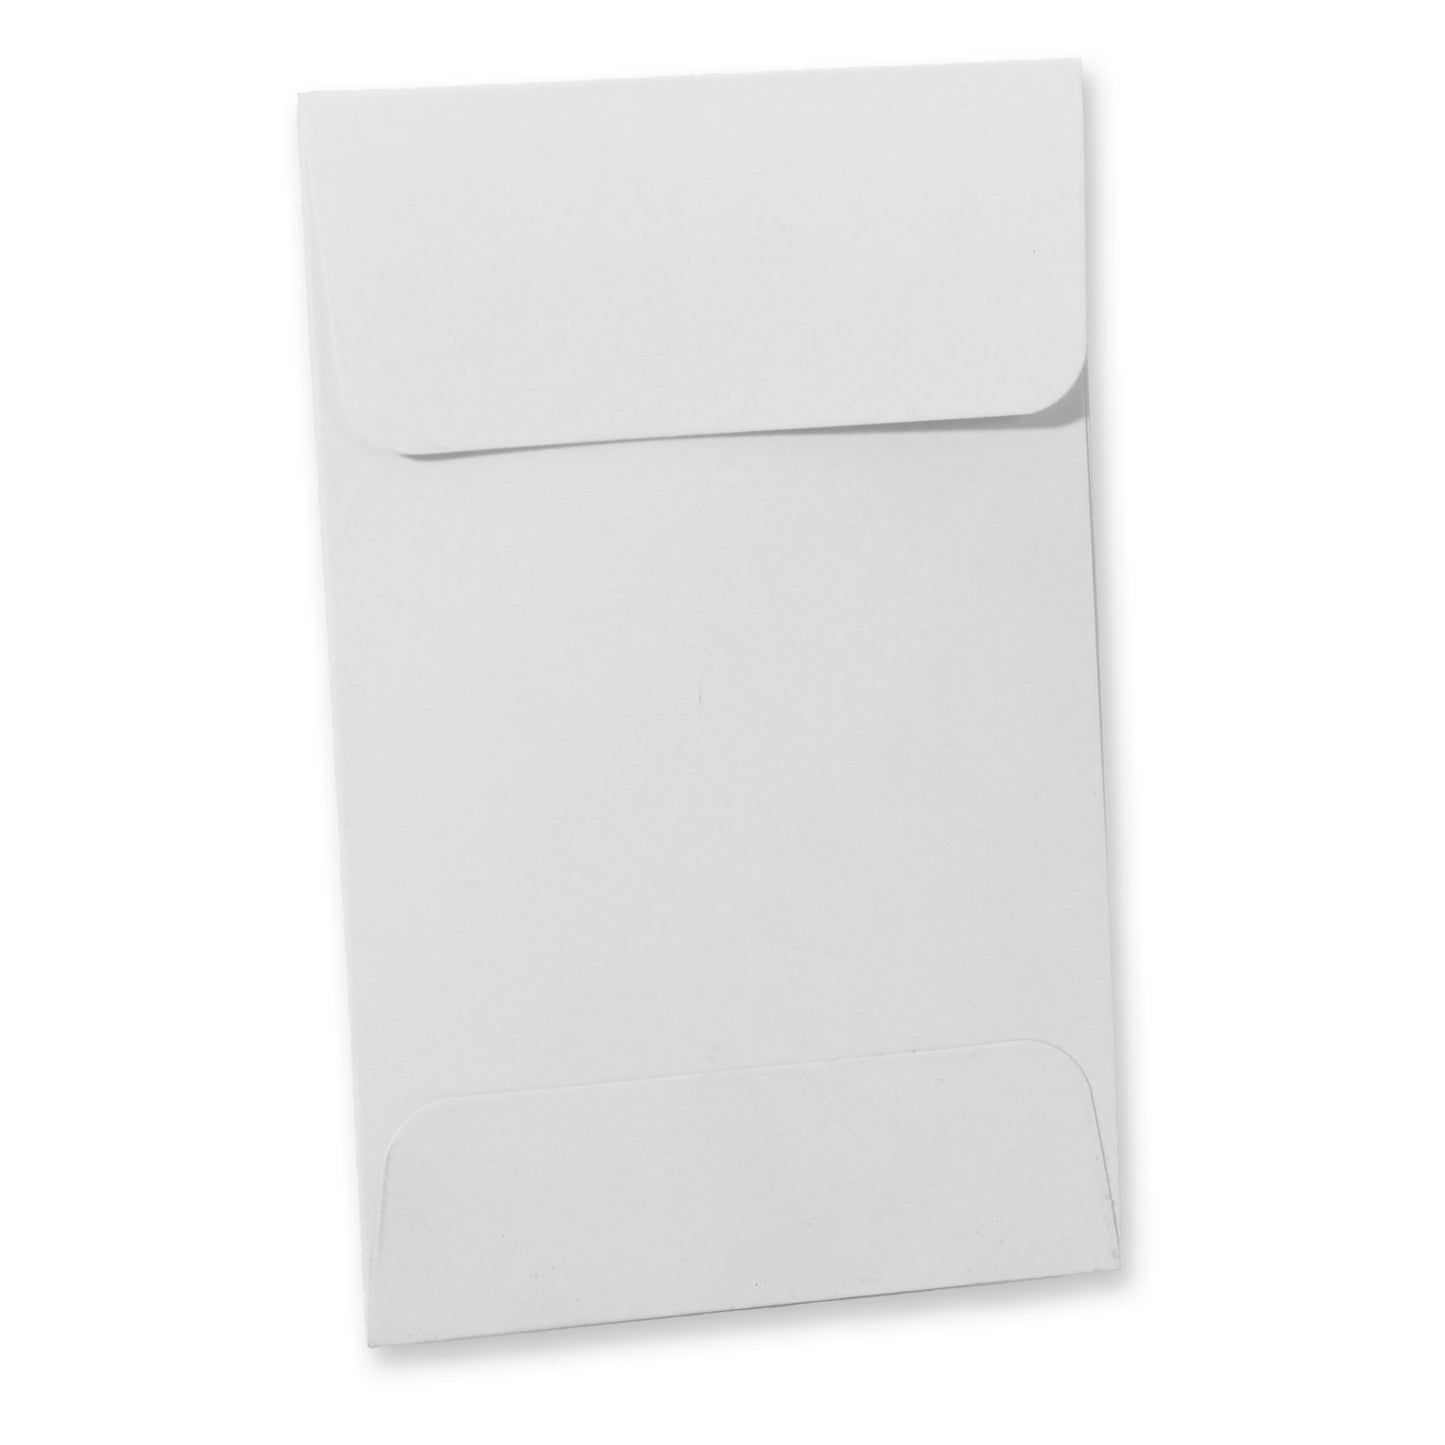 Shatter Envelope White